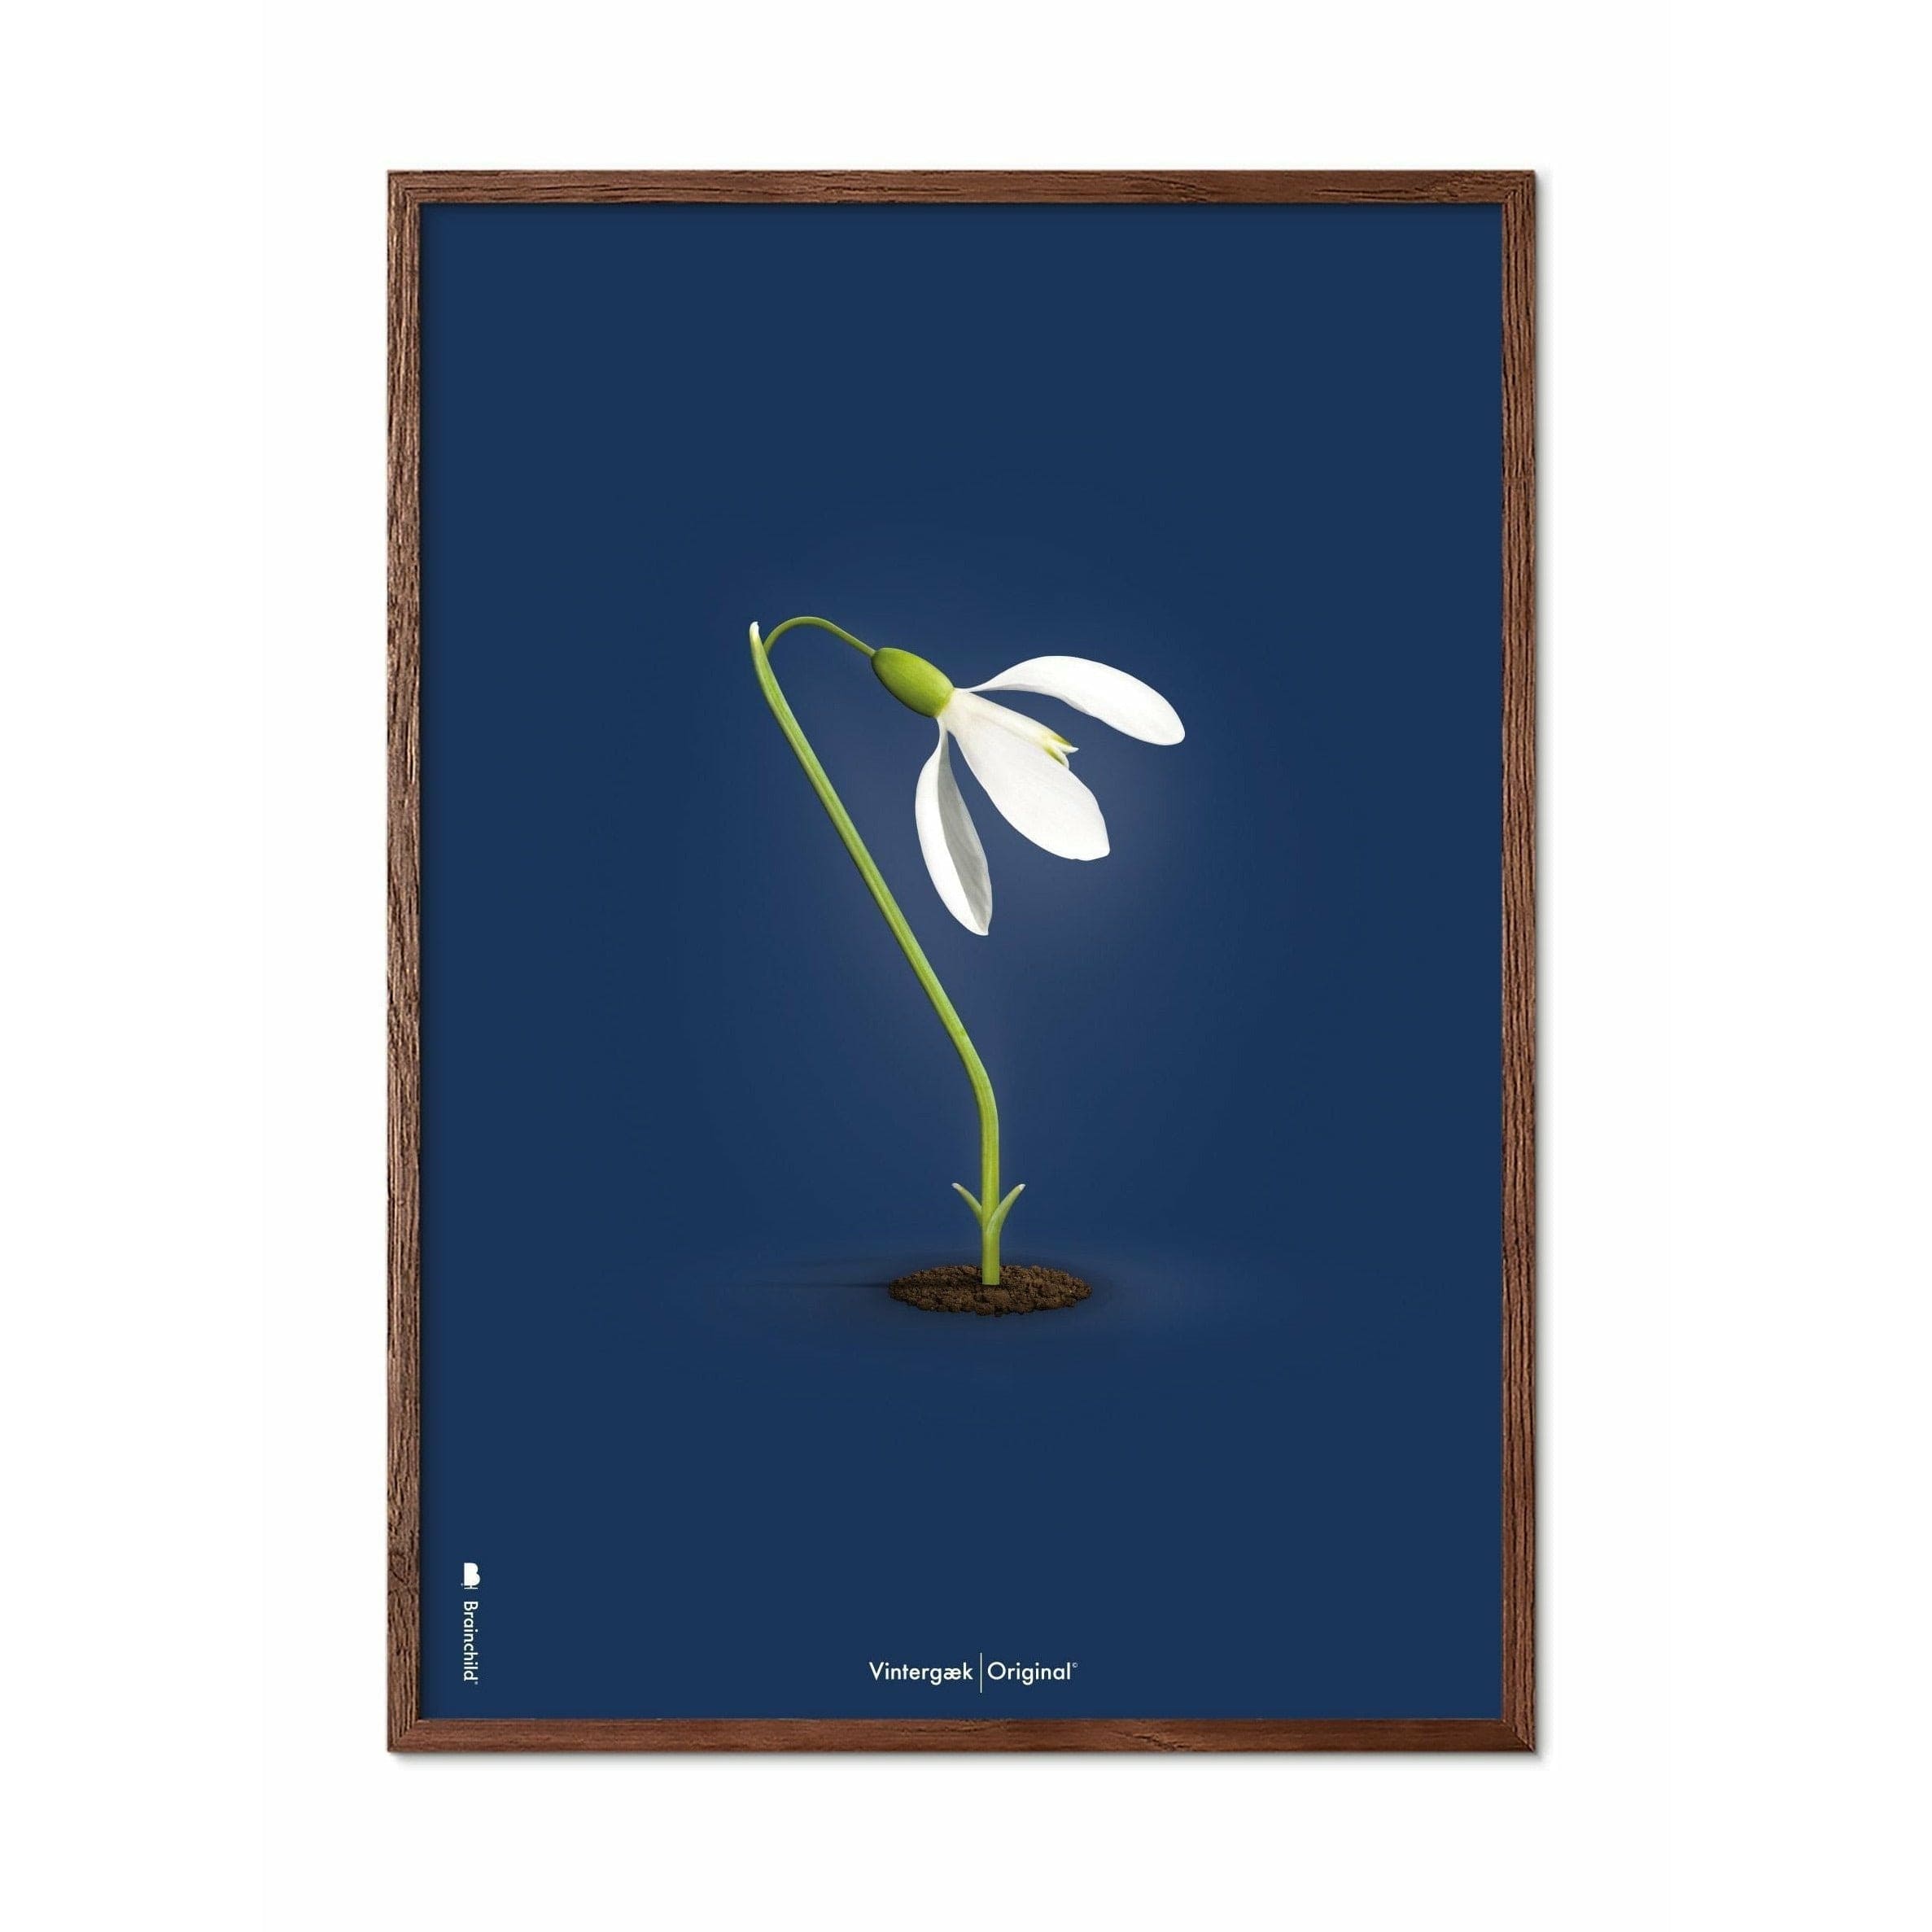 Brainchild Snowdrop Classic Poster, Frame Made Of Dark Wood 30x40 Cm, Dark Blue Background